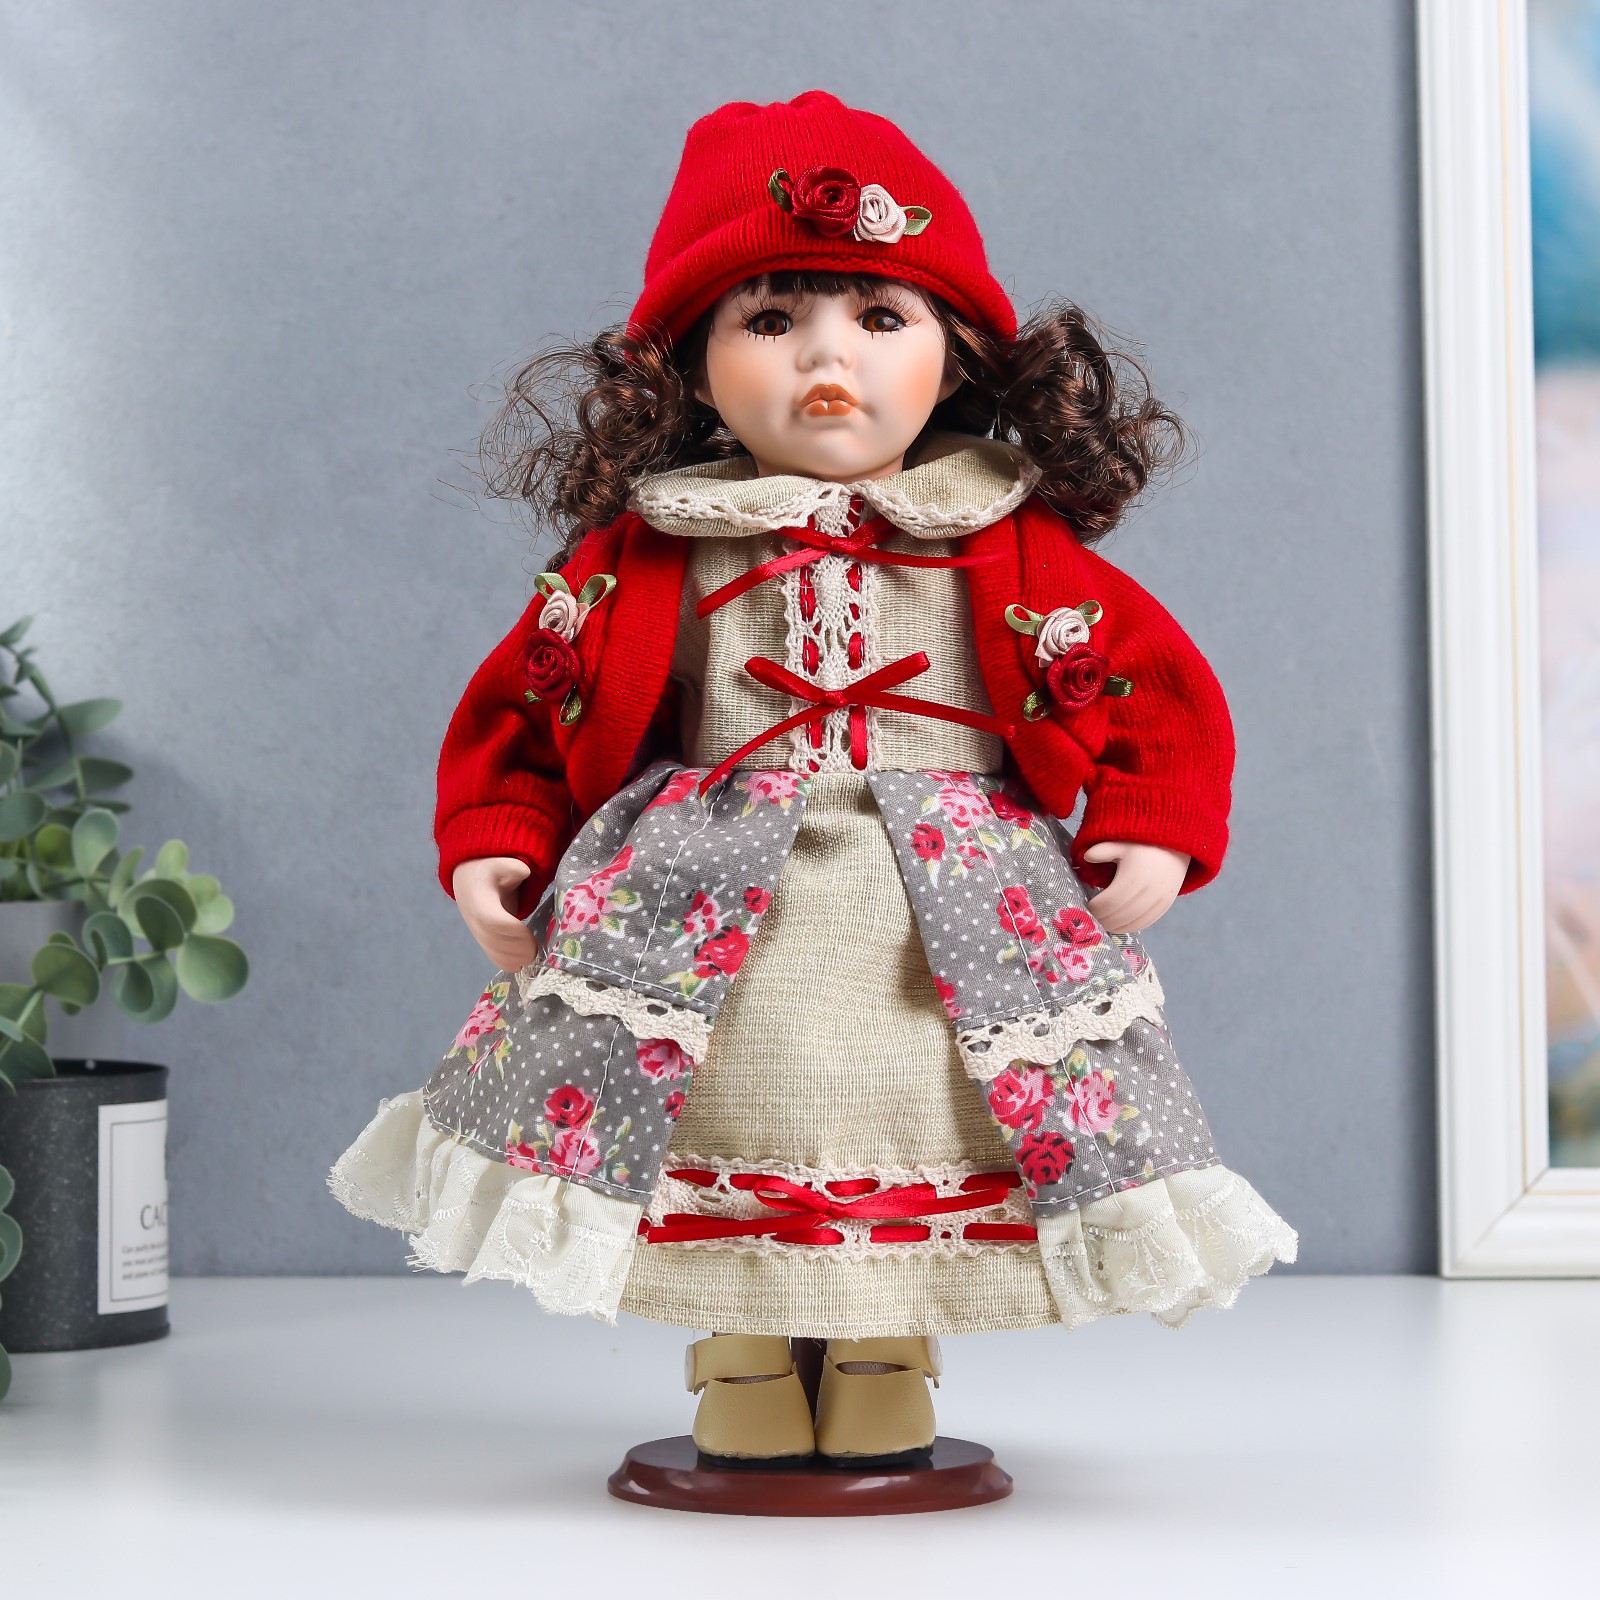 Кукла коллекционная Зимнее волшебство керамика «Лиза в платье с цветами в красном жакете» 30 см - фото 1